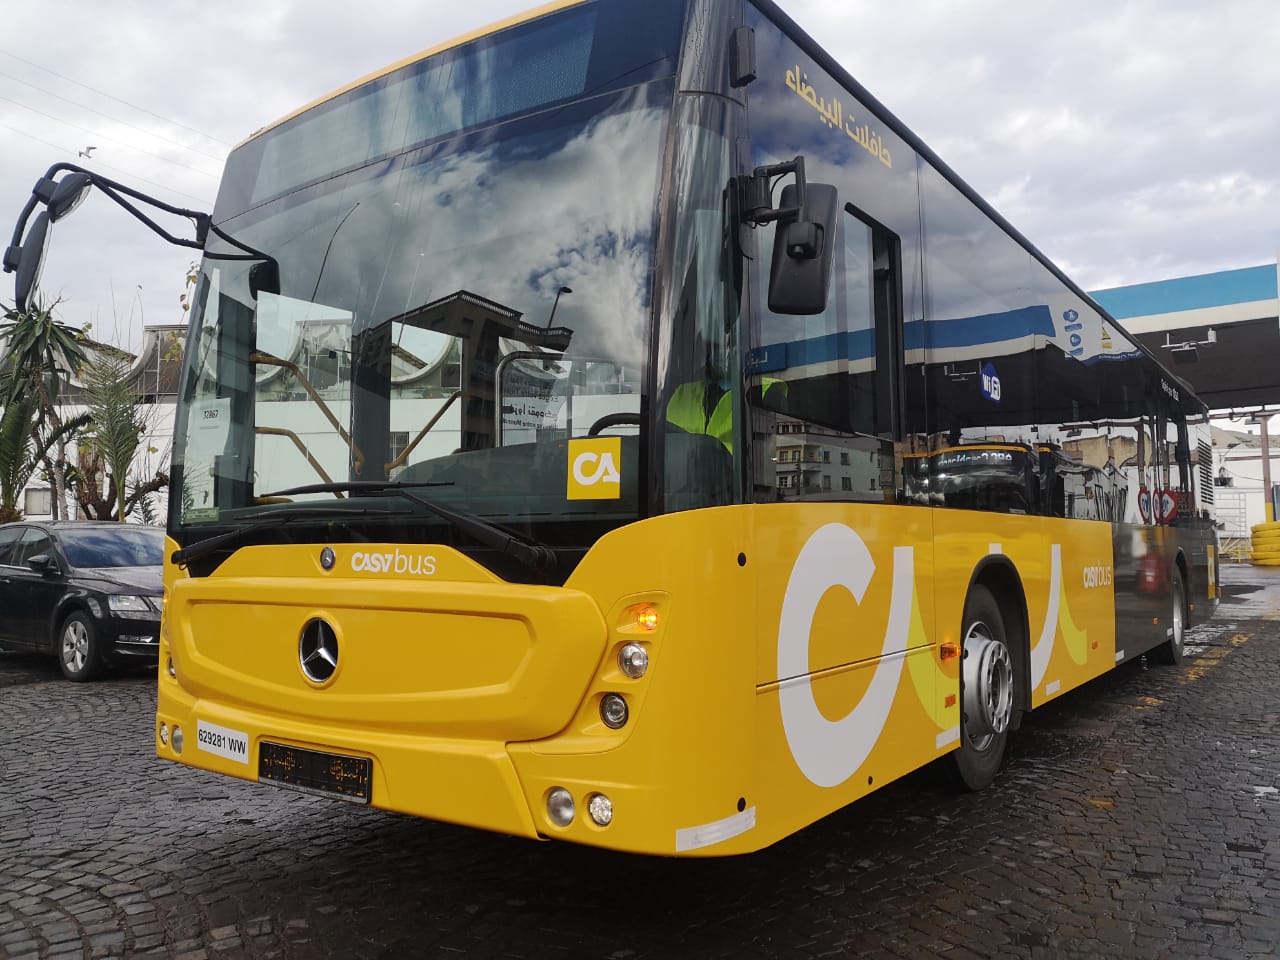 Casabus: tarifs, horaires…tout ce qu’il faut savoir sur les nouveaux bus de Casablanca